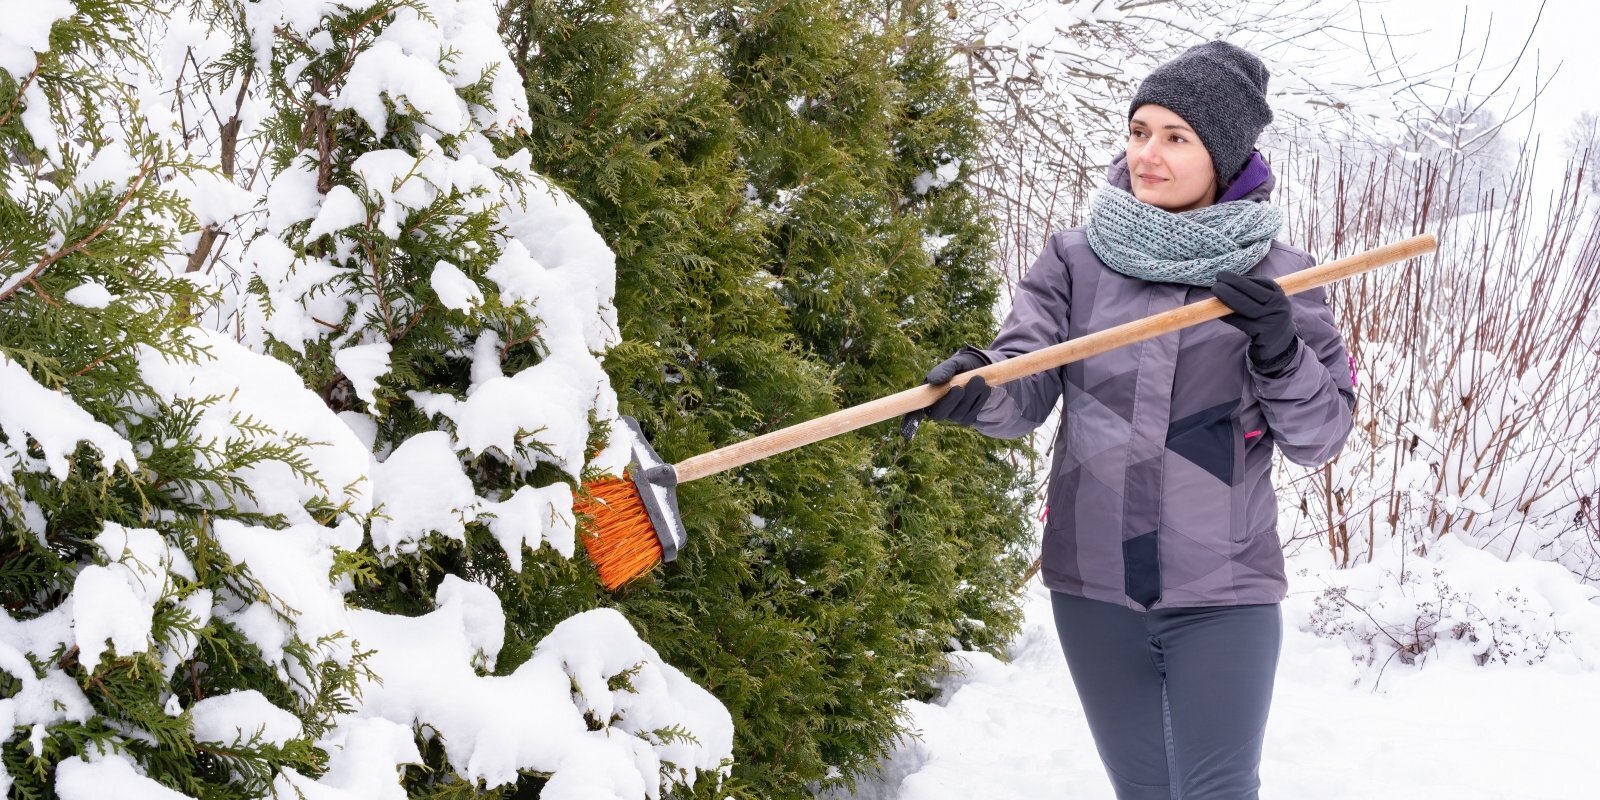 Полезно знать: Какие растения нужно быстро освобождать от толстой снежной шапки?